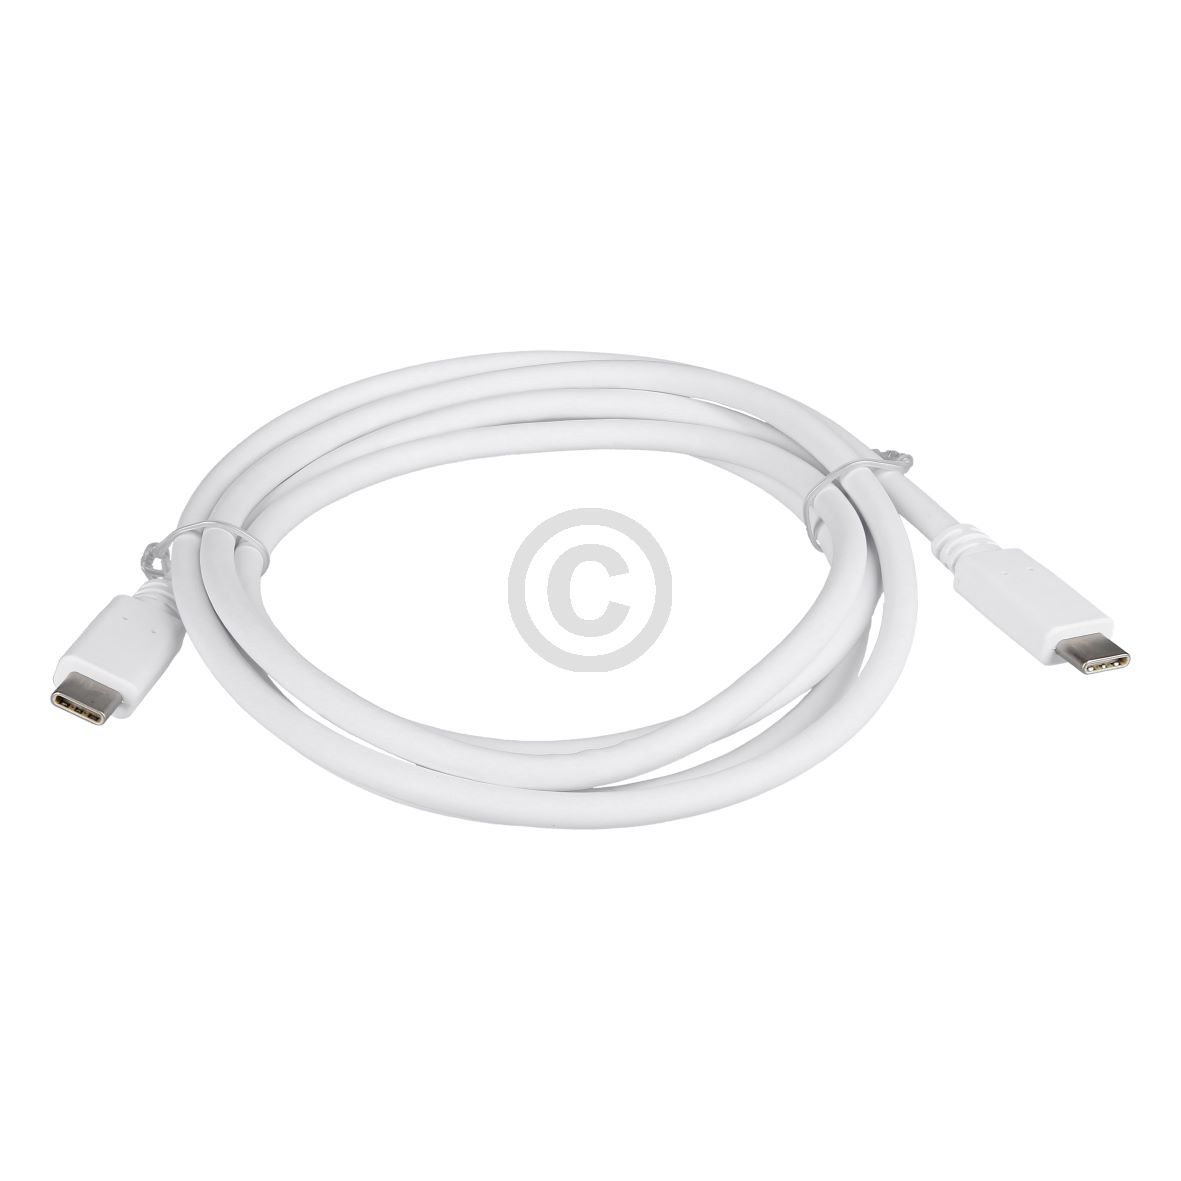 USB3.1 Kabel 1,5m LG EAD63932603 für LCD Monitor